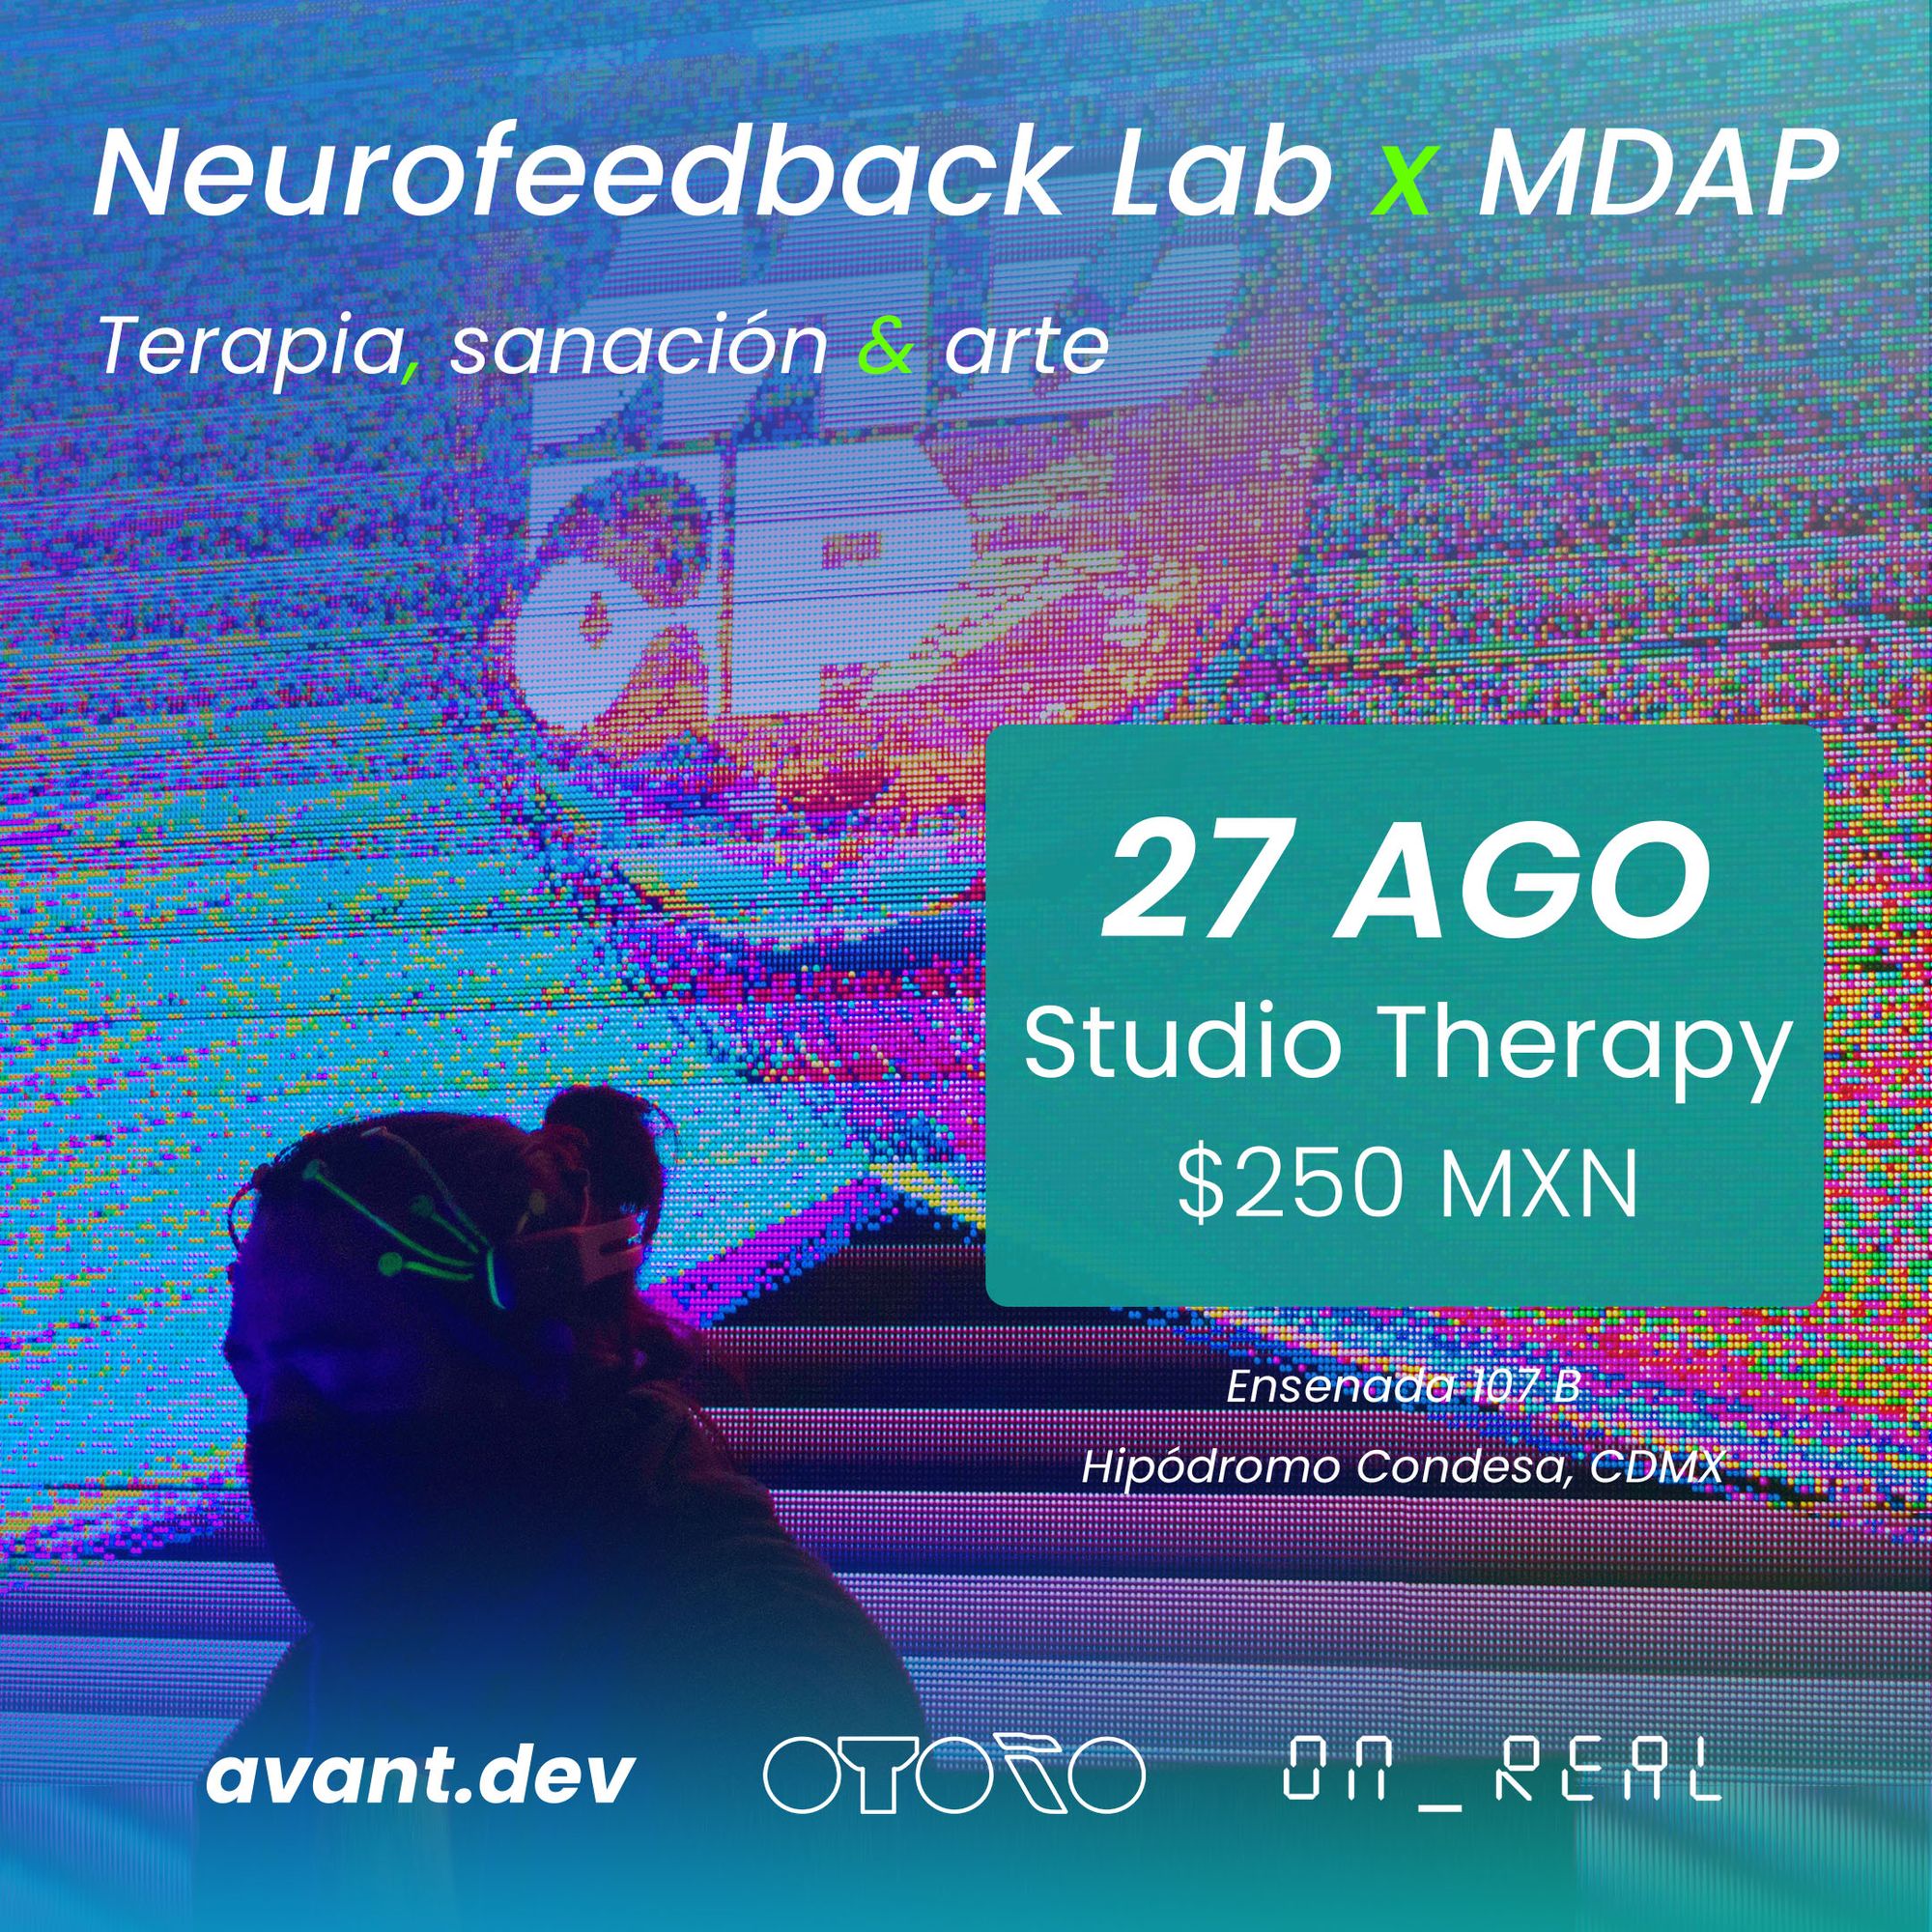 Neurofeedback Lab x MDAP: Terapia, sanación y arte